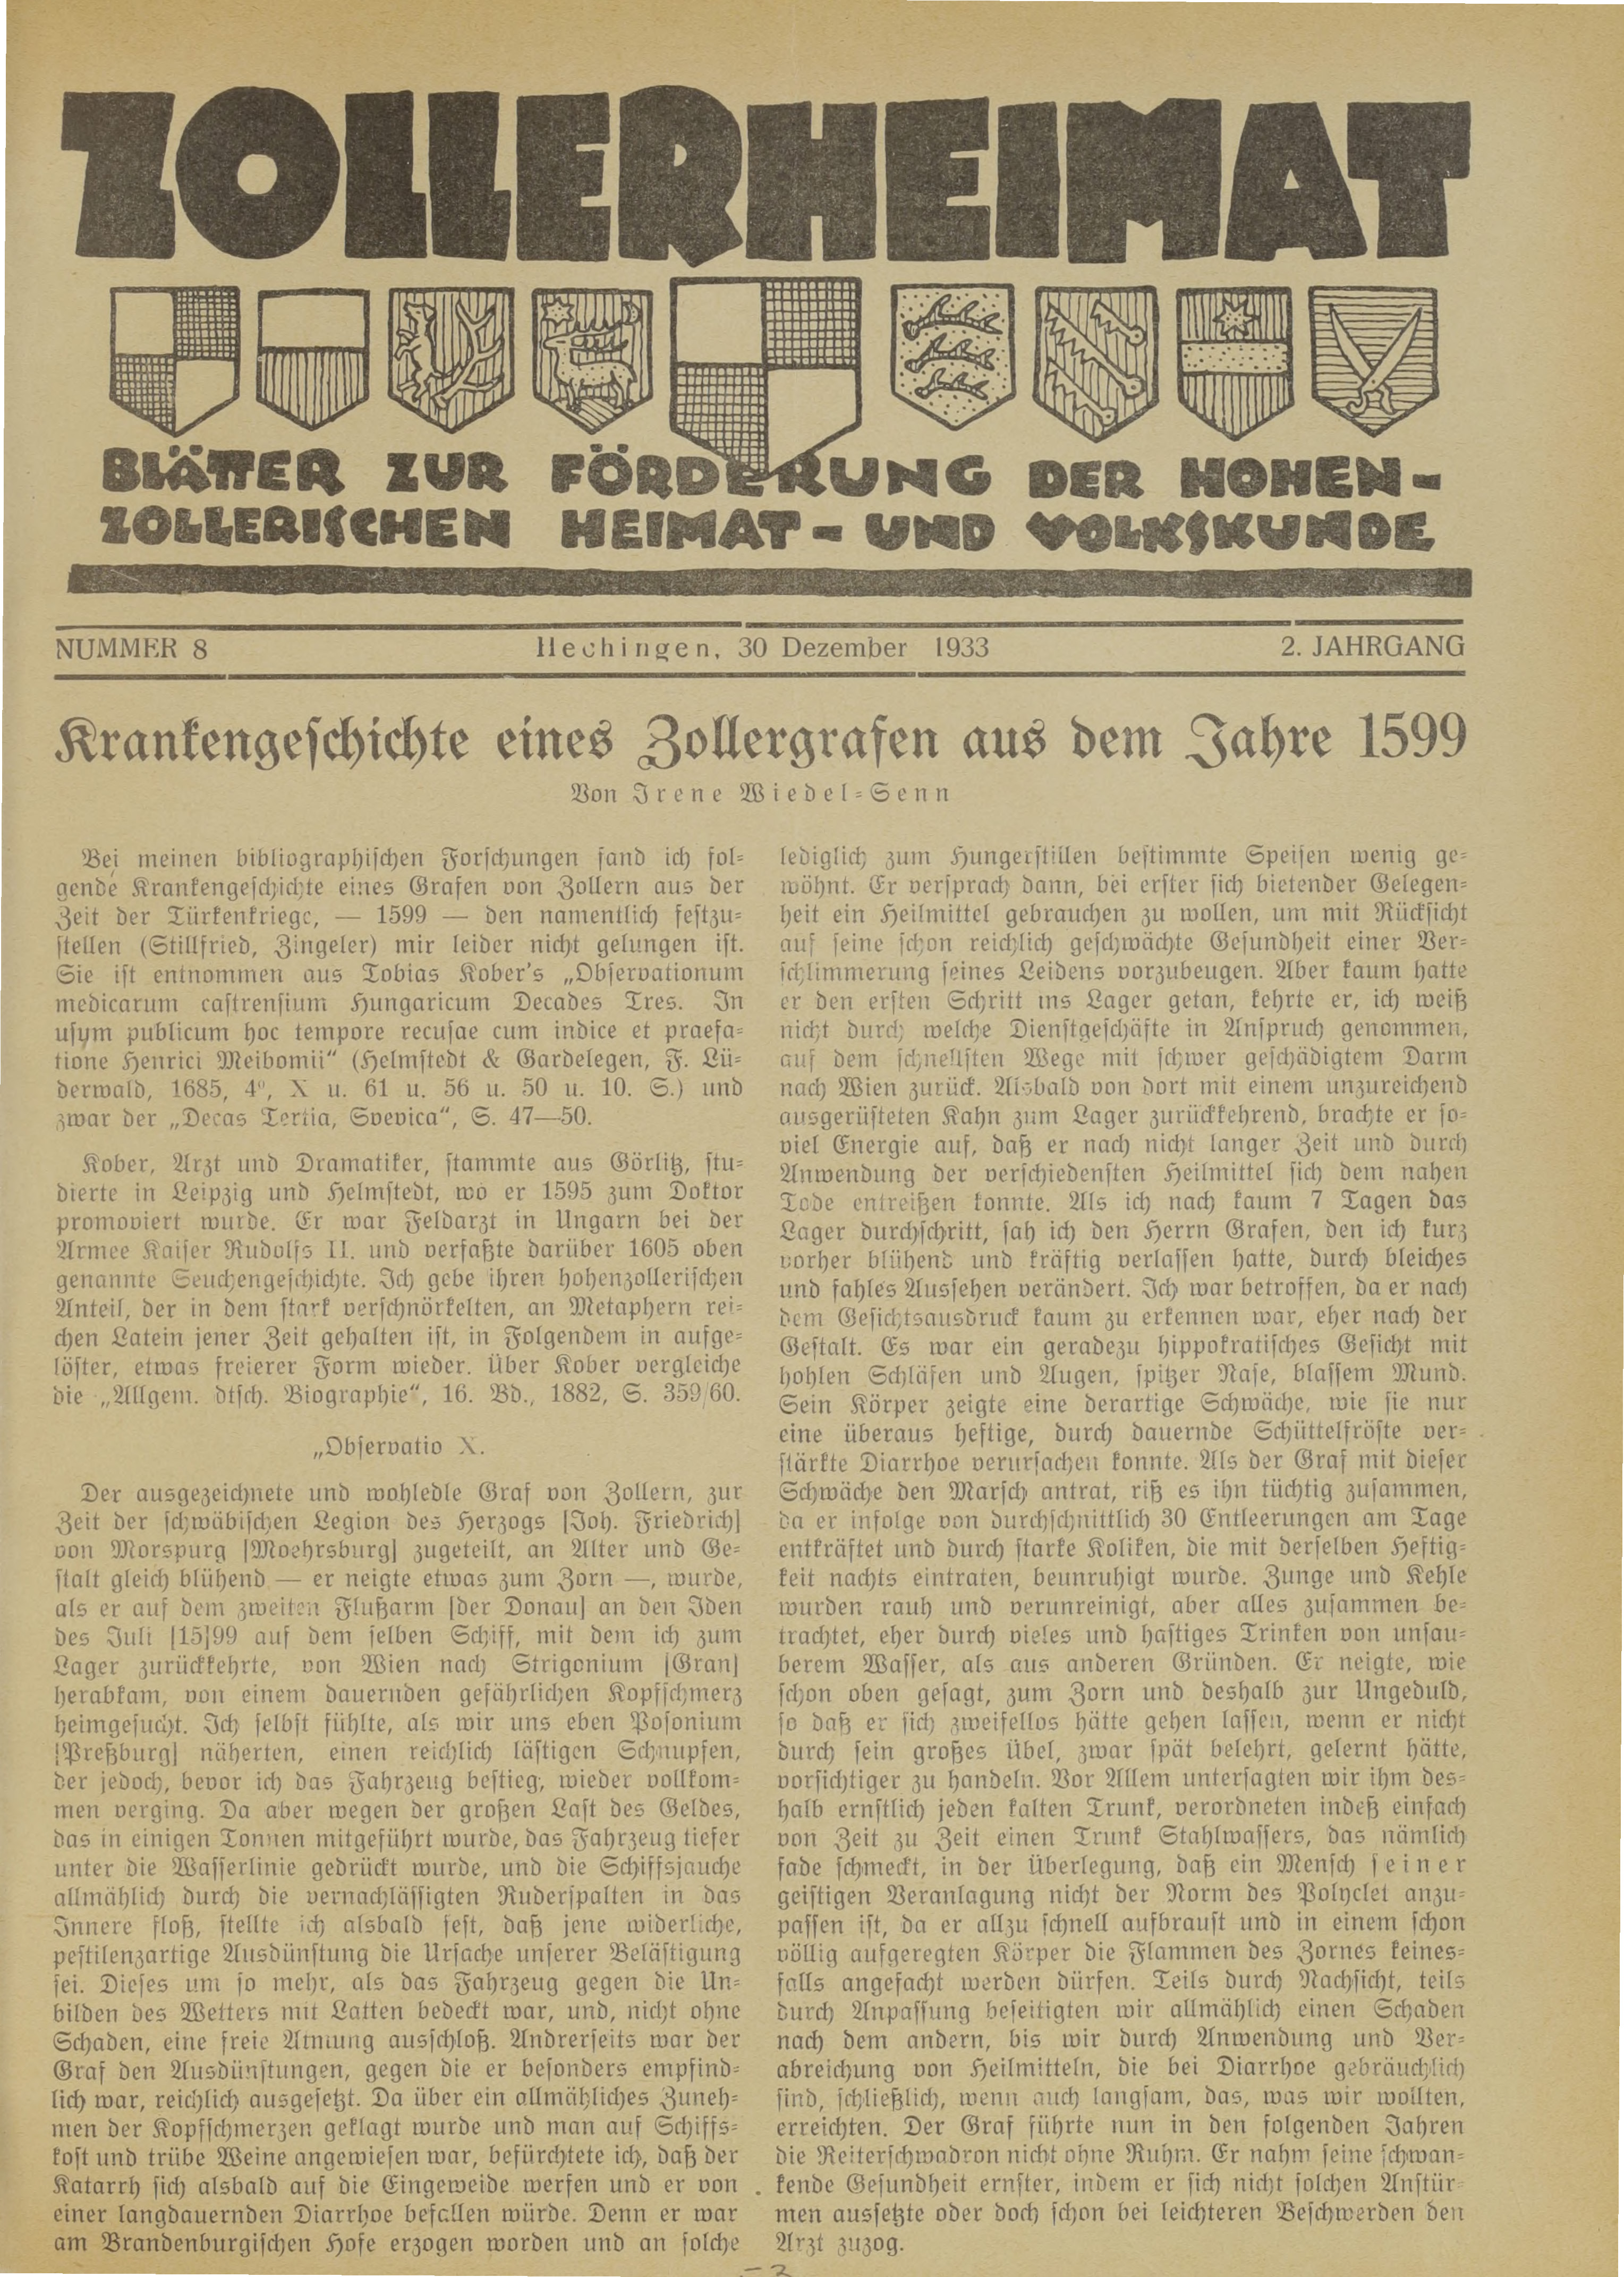                     Ansehen Bd. 2 Nr. 8 (1933): Zollerheimat
                